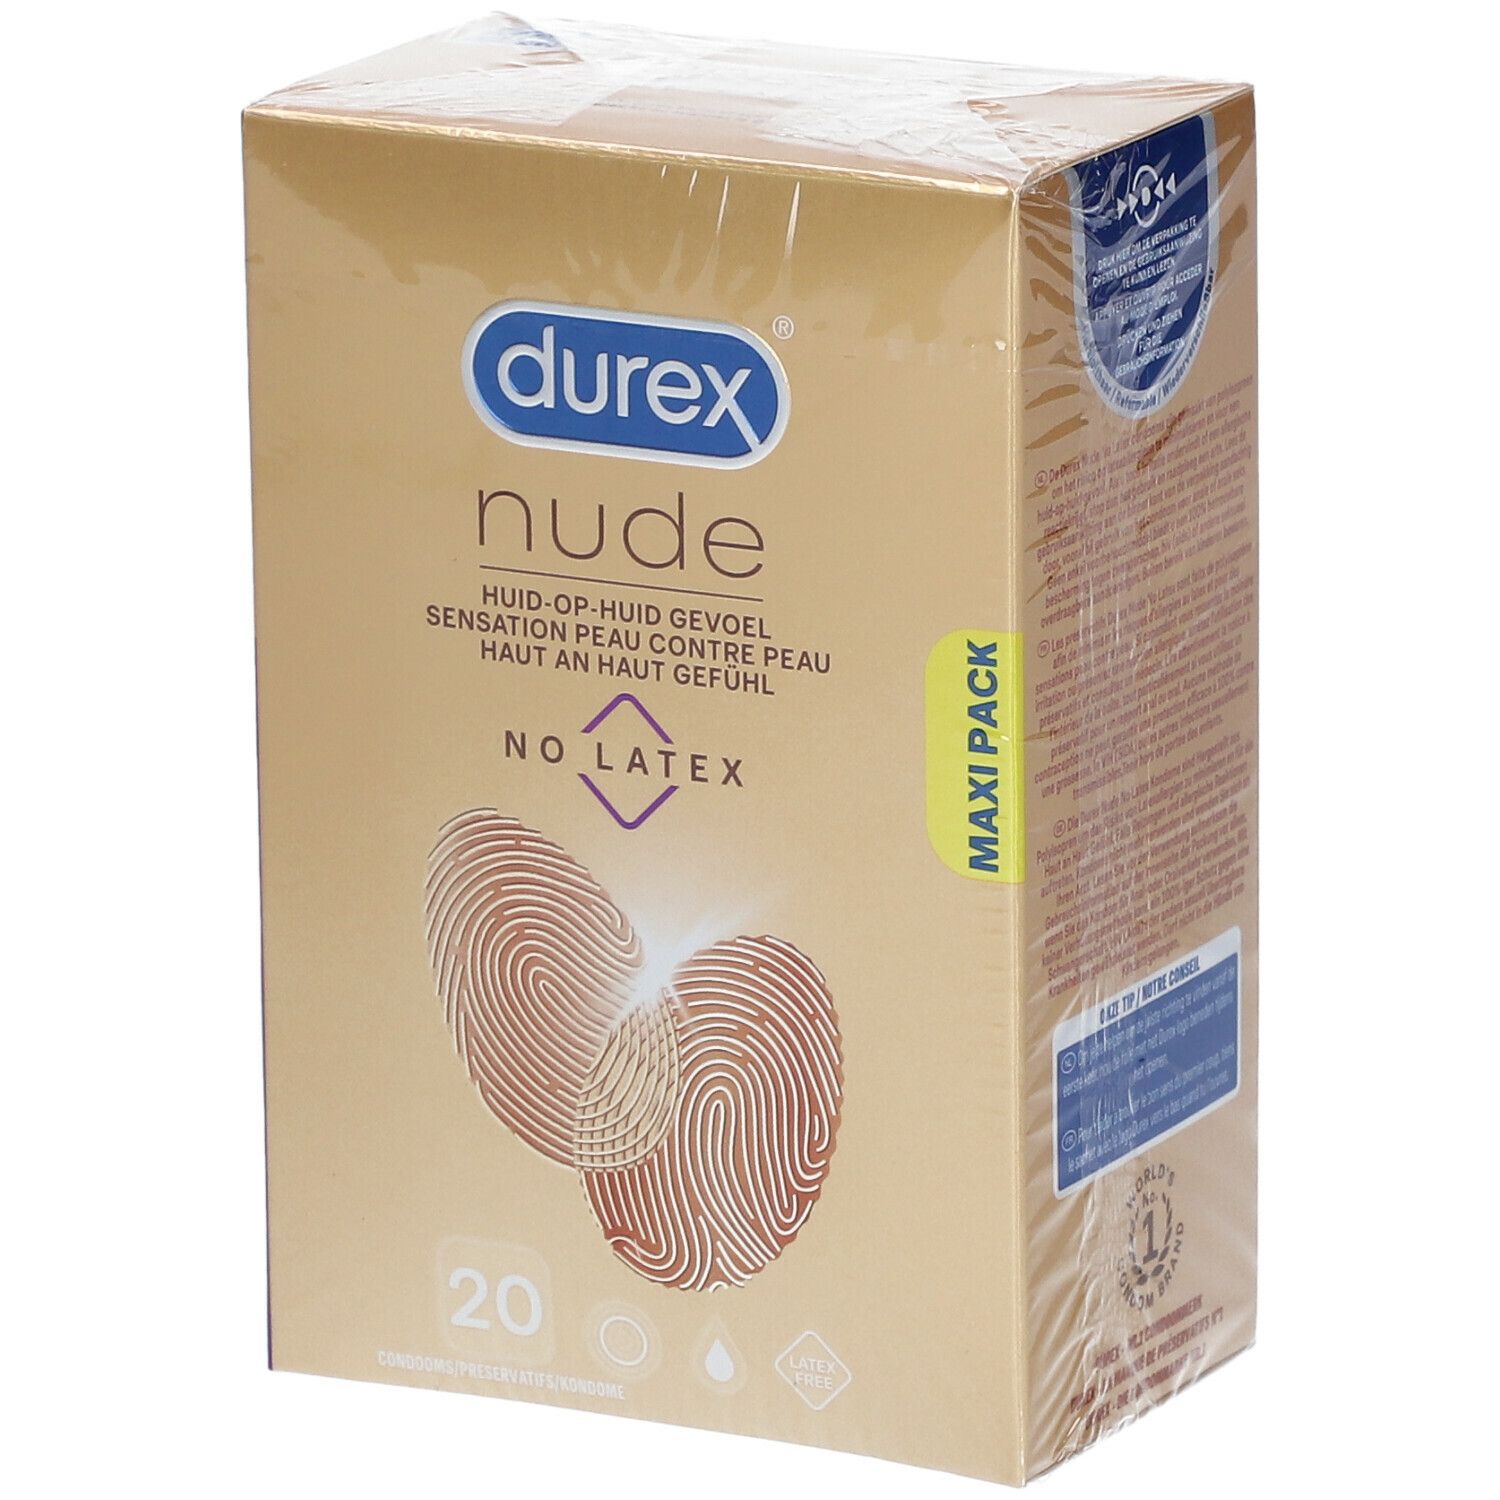 durex® Nude Préservatifs Sans Latex Sensation Peau contre Peau